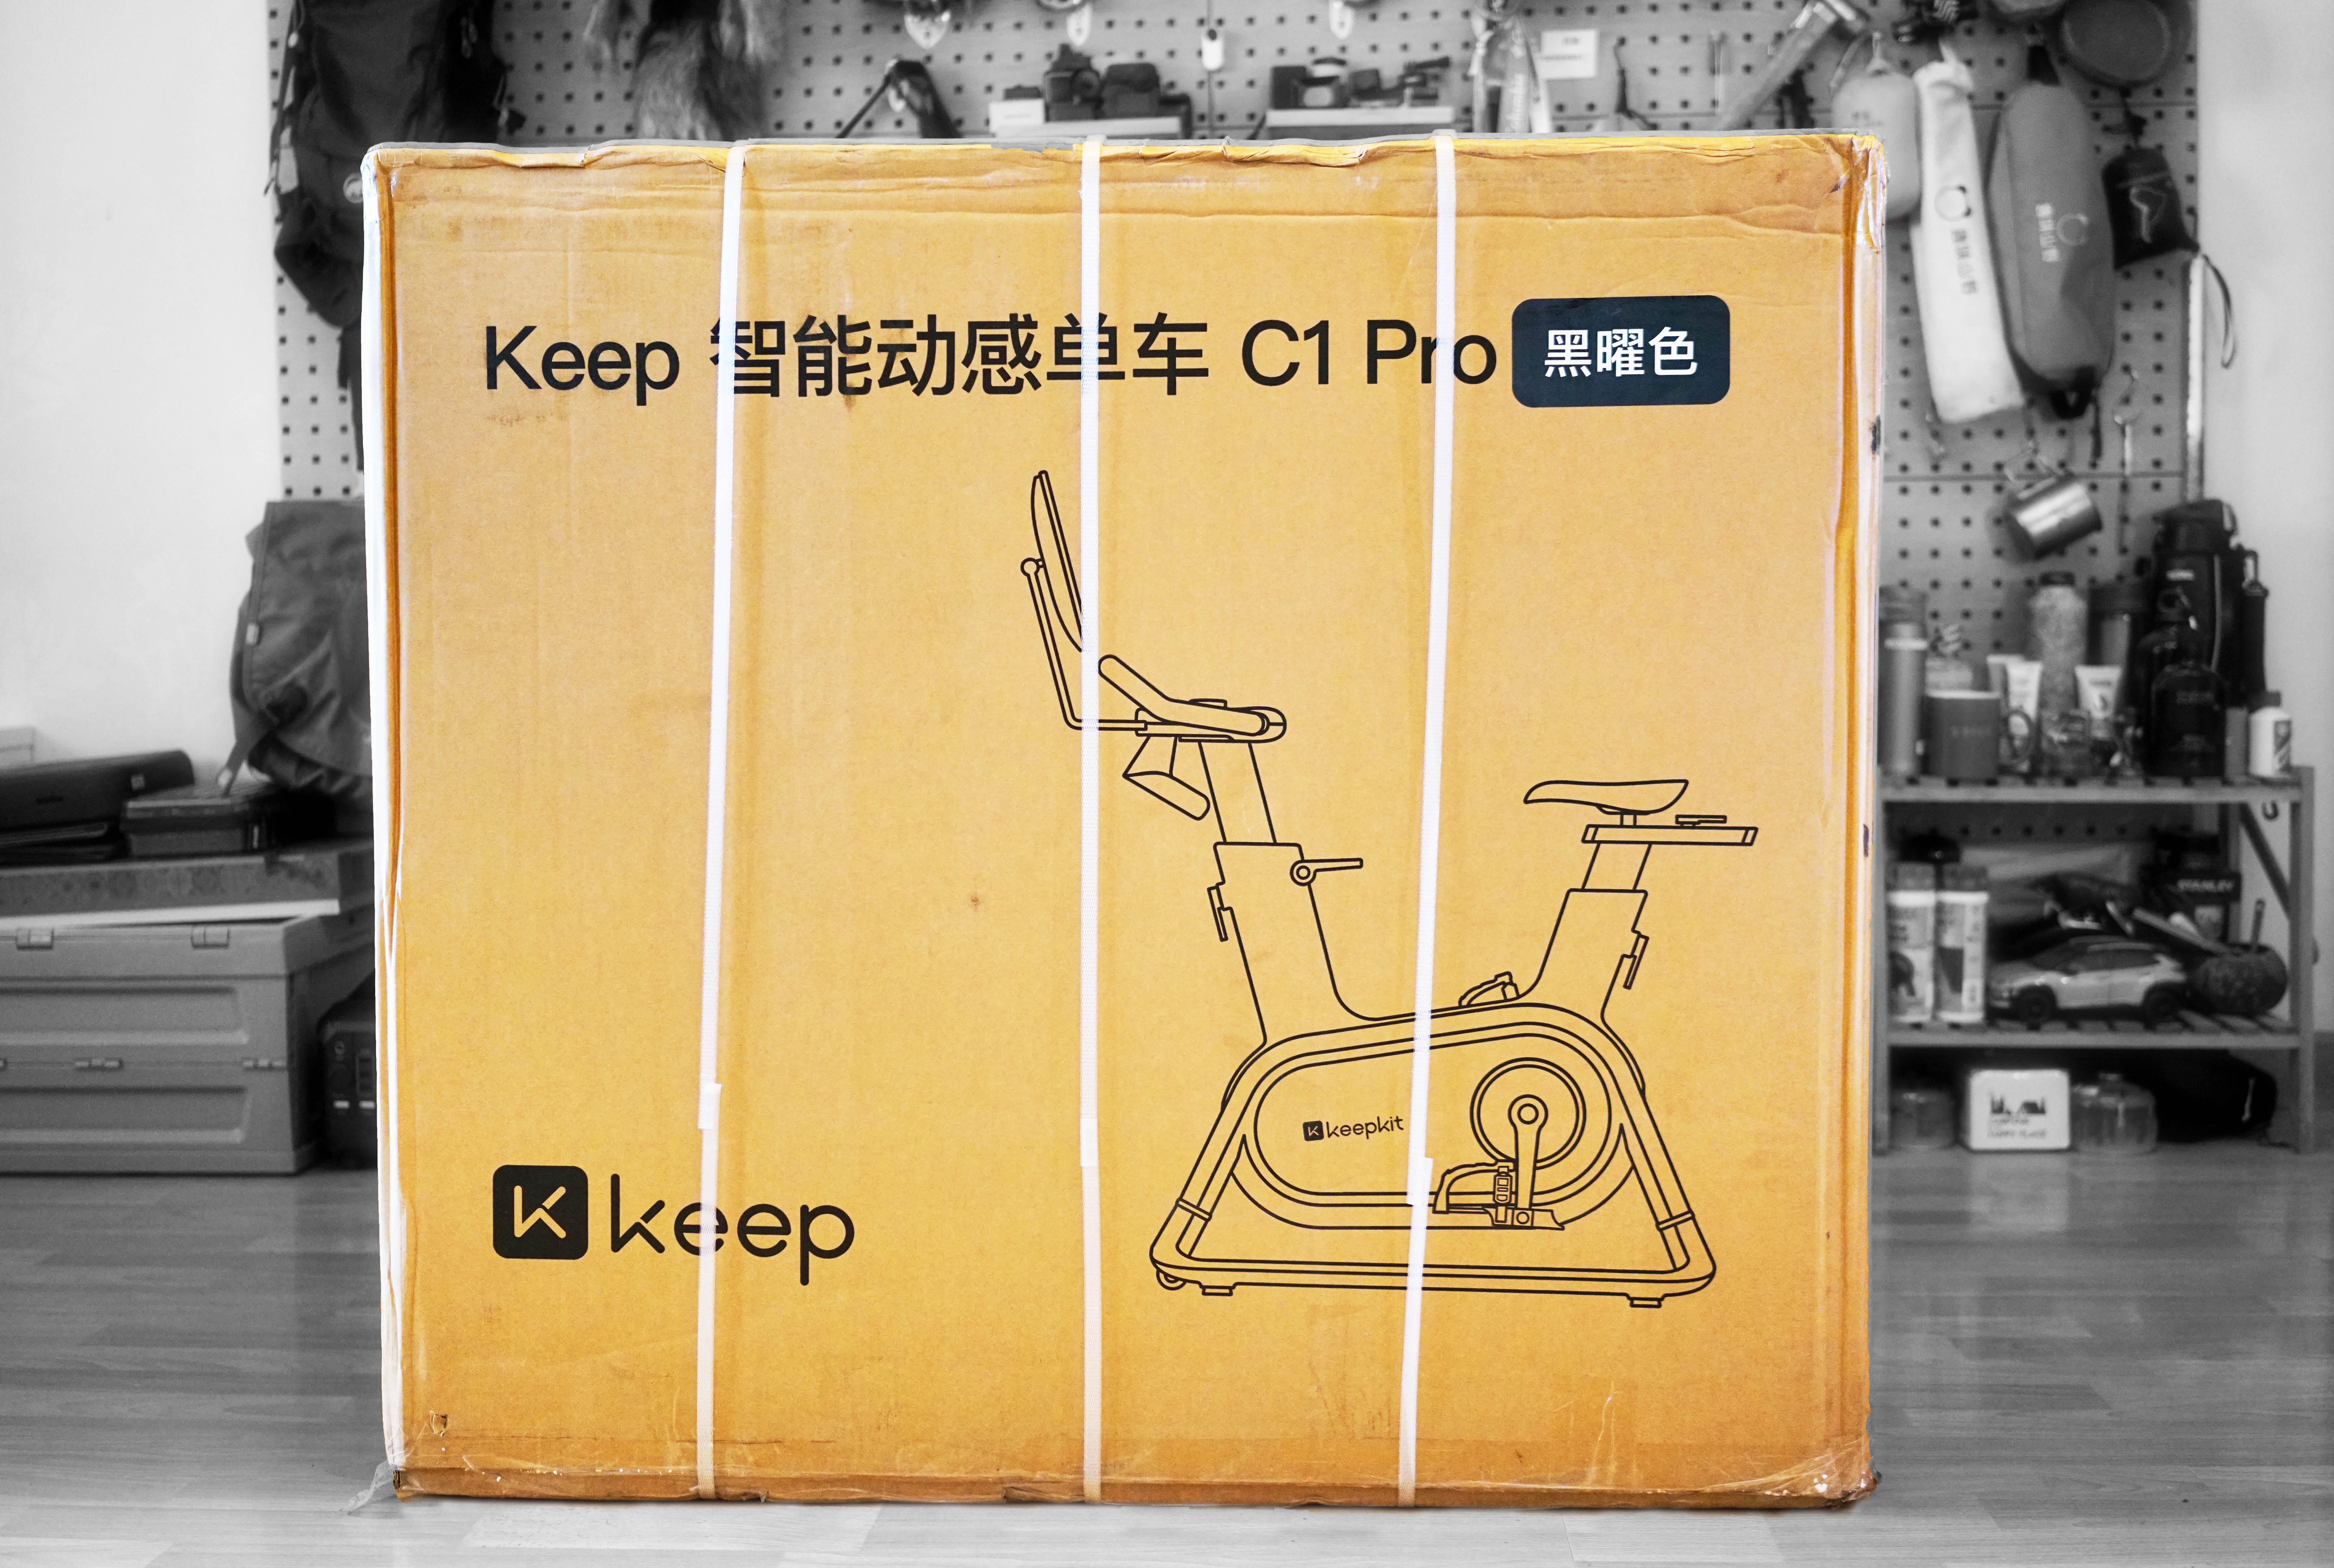 糖纸众测 | Keep C1 Pro：快乐燃脂，一辆智能动感单车的健身房